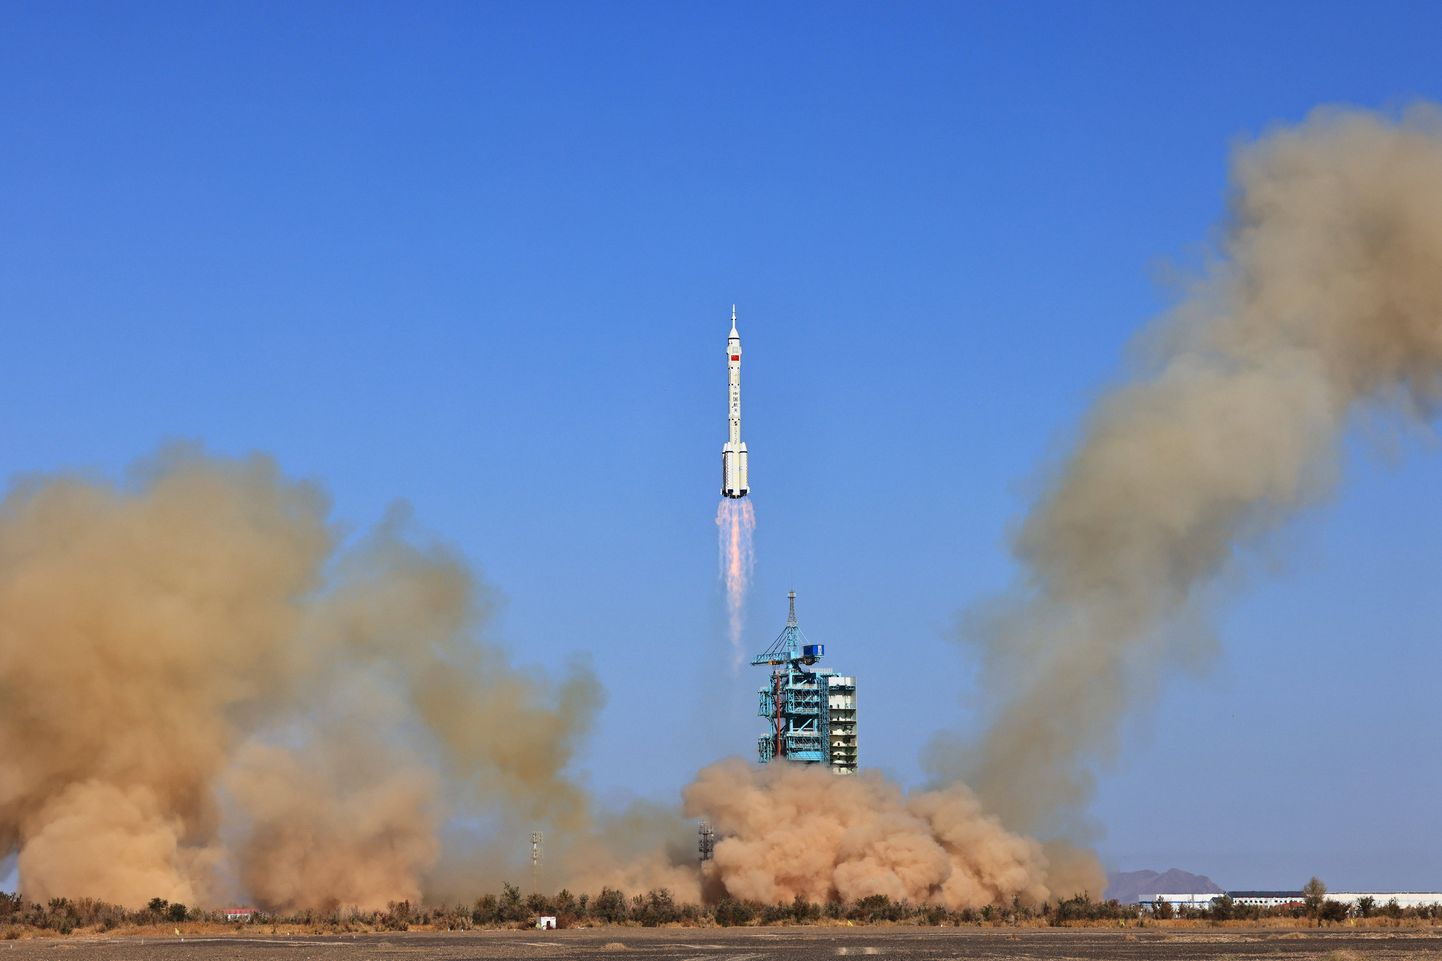 Hiina mehitatud kosmoselaev startis möödunud aastal Long March-2F kanderaketiga Jiuquanist kosmosesse. Ka Hiinal on plaan inimesed Kuule saata, kuid ilmselt jõuab USA sinna tagasi enne neid. Rivaalitsemine kosmoses võib jõuda ka militaarvaldkonda, ennustavad sõjaväe eksperdid.